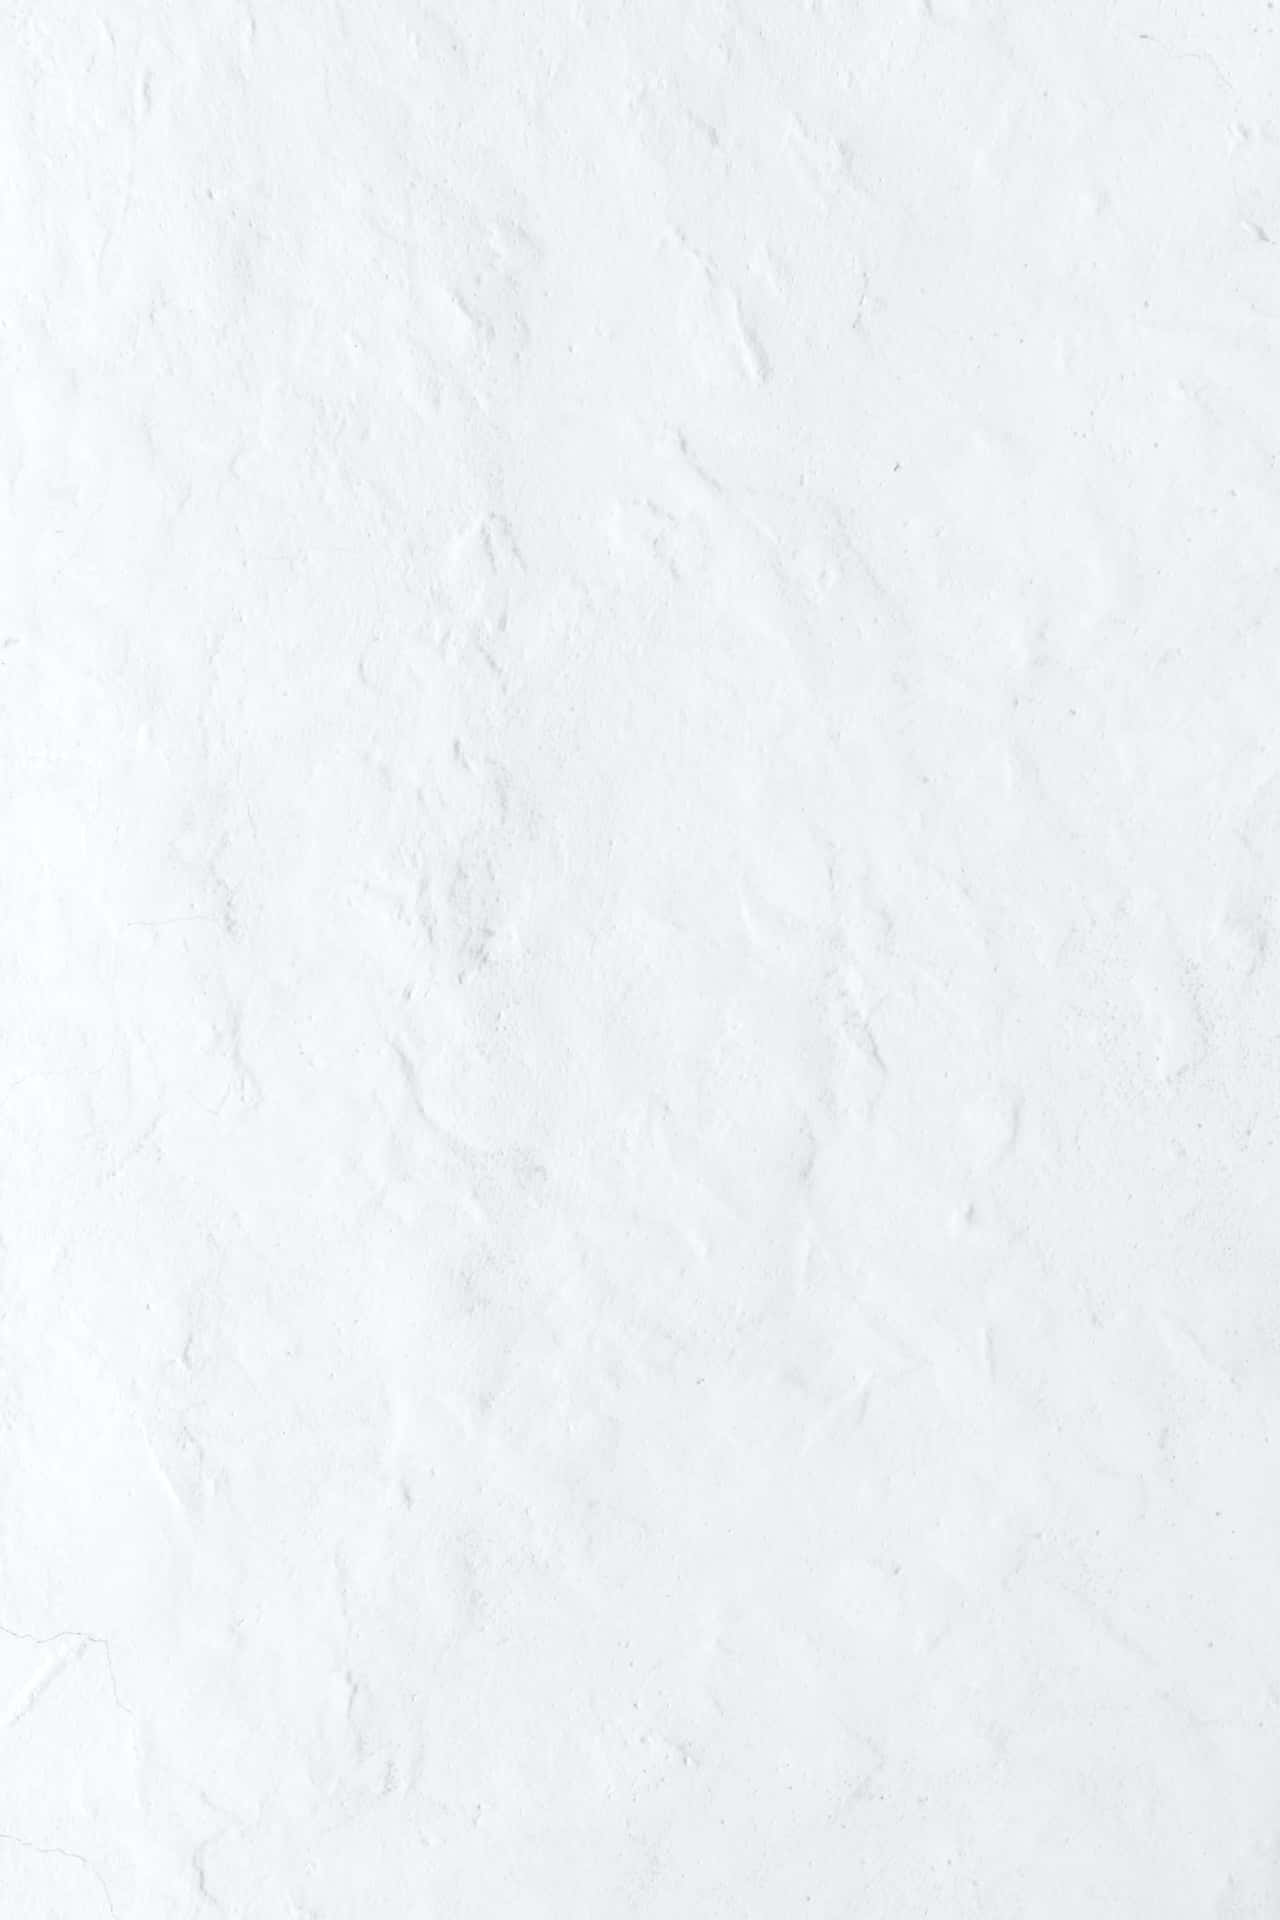 Hvid væg baggrund med bump og tekstur